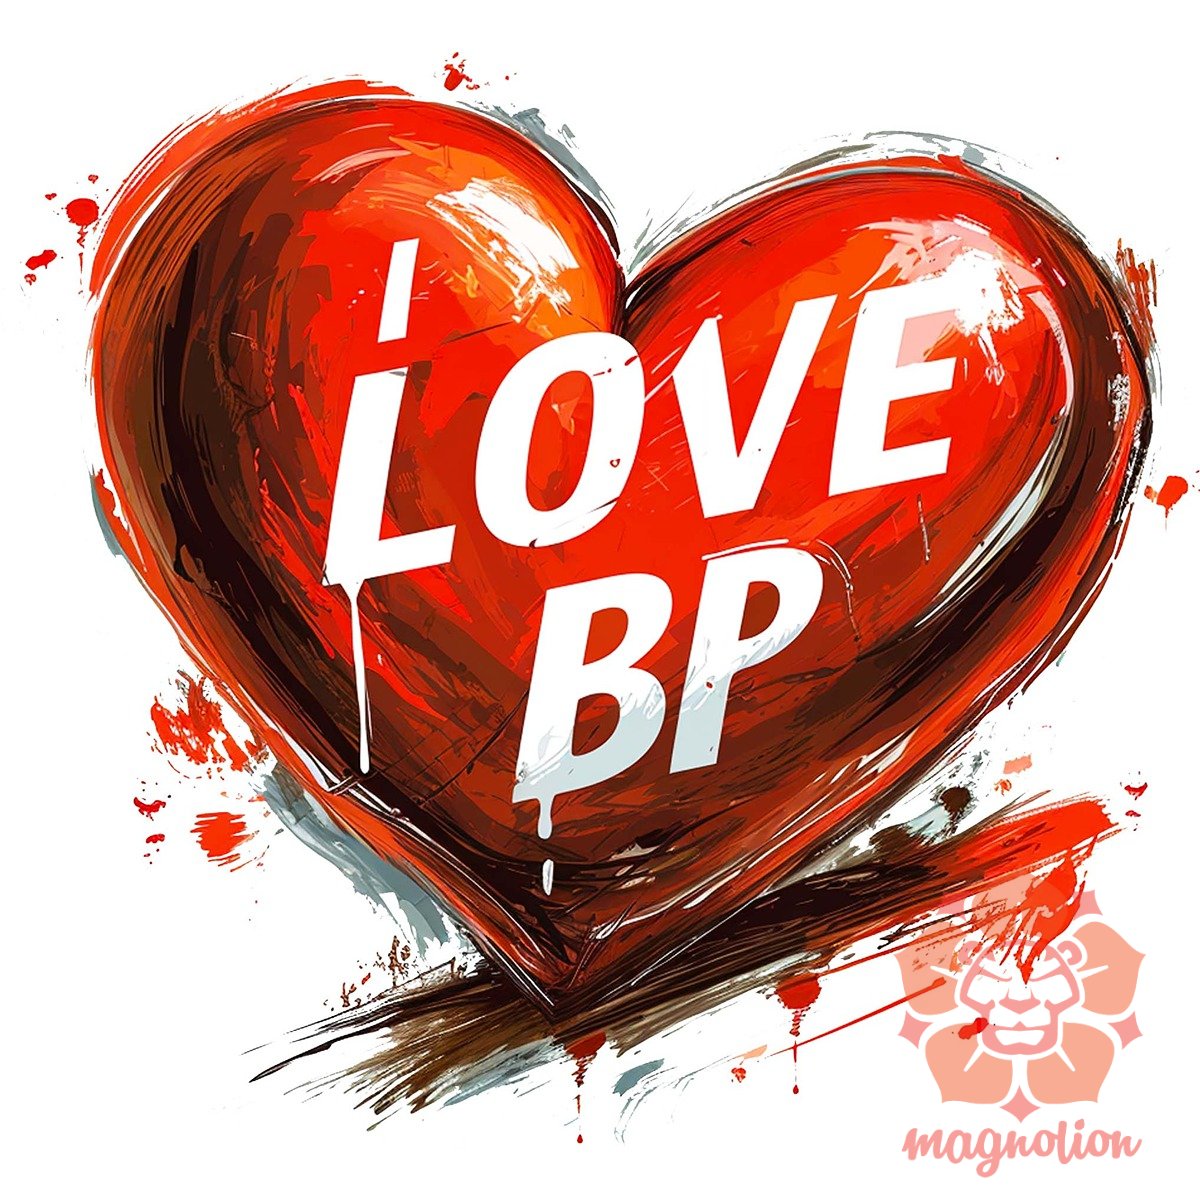 Love BP v15